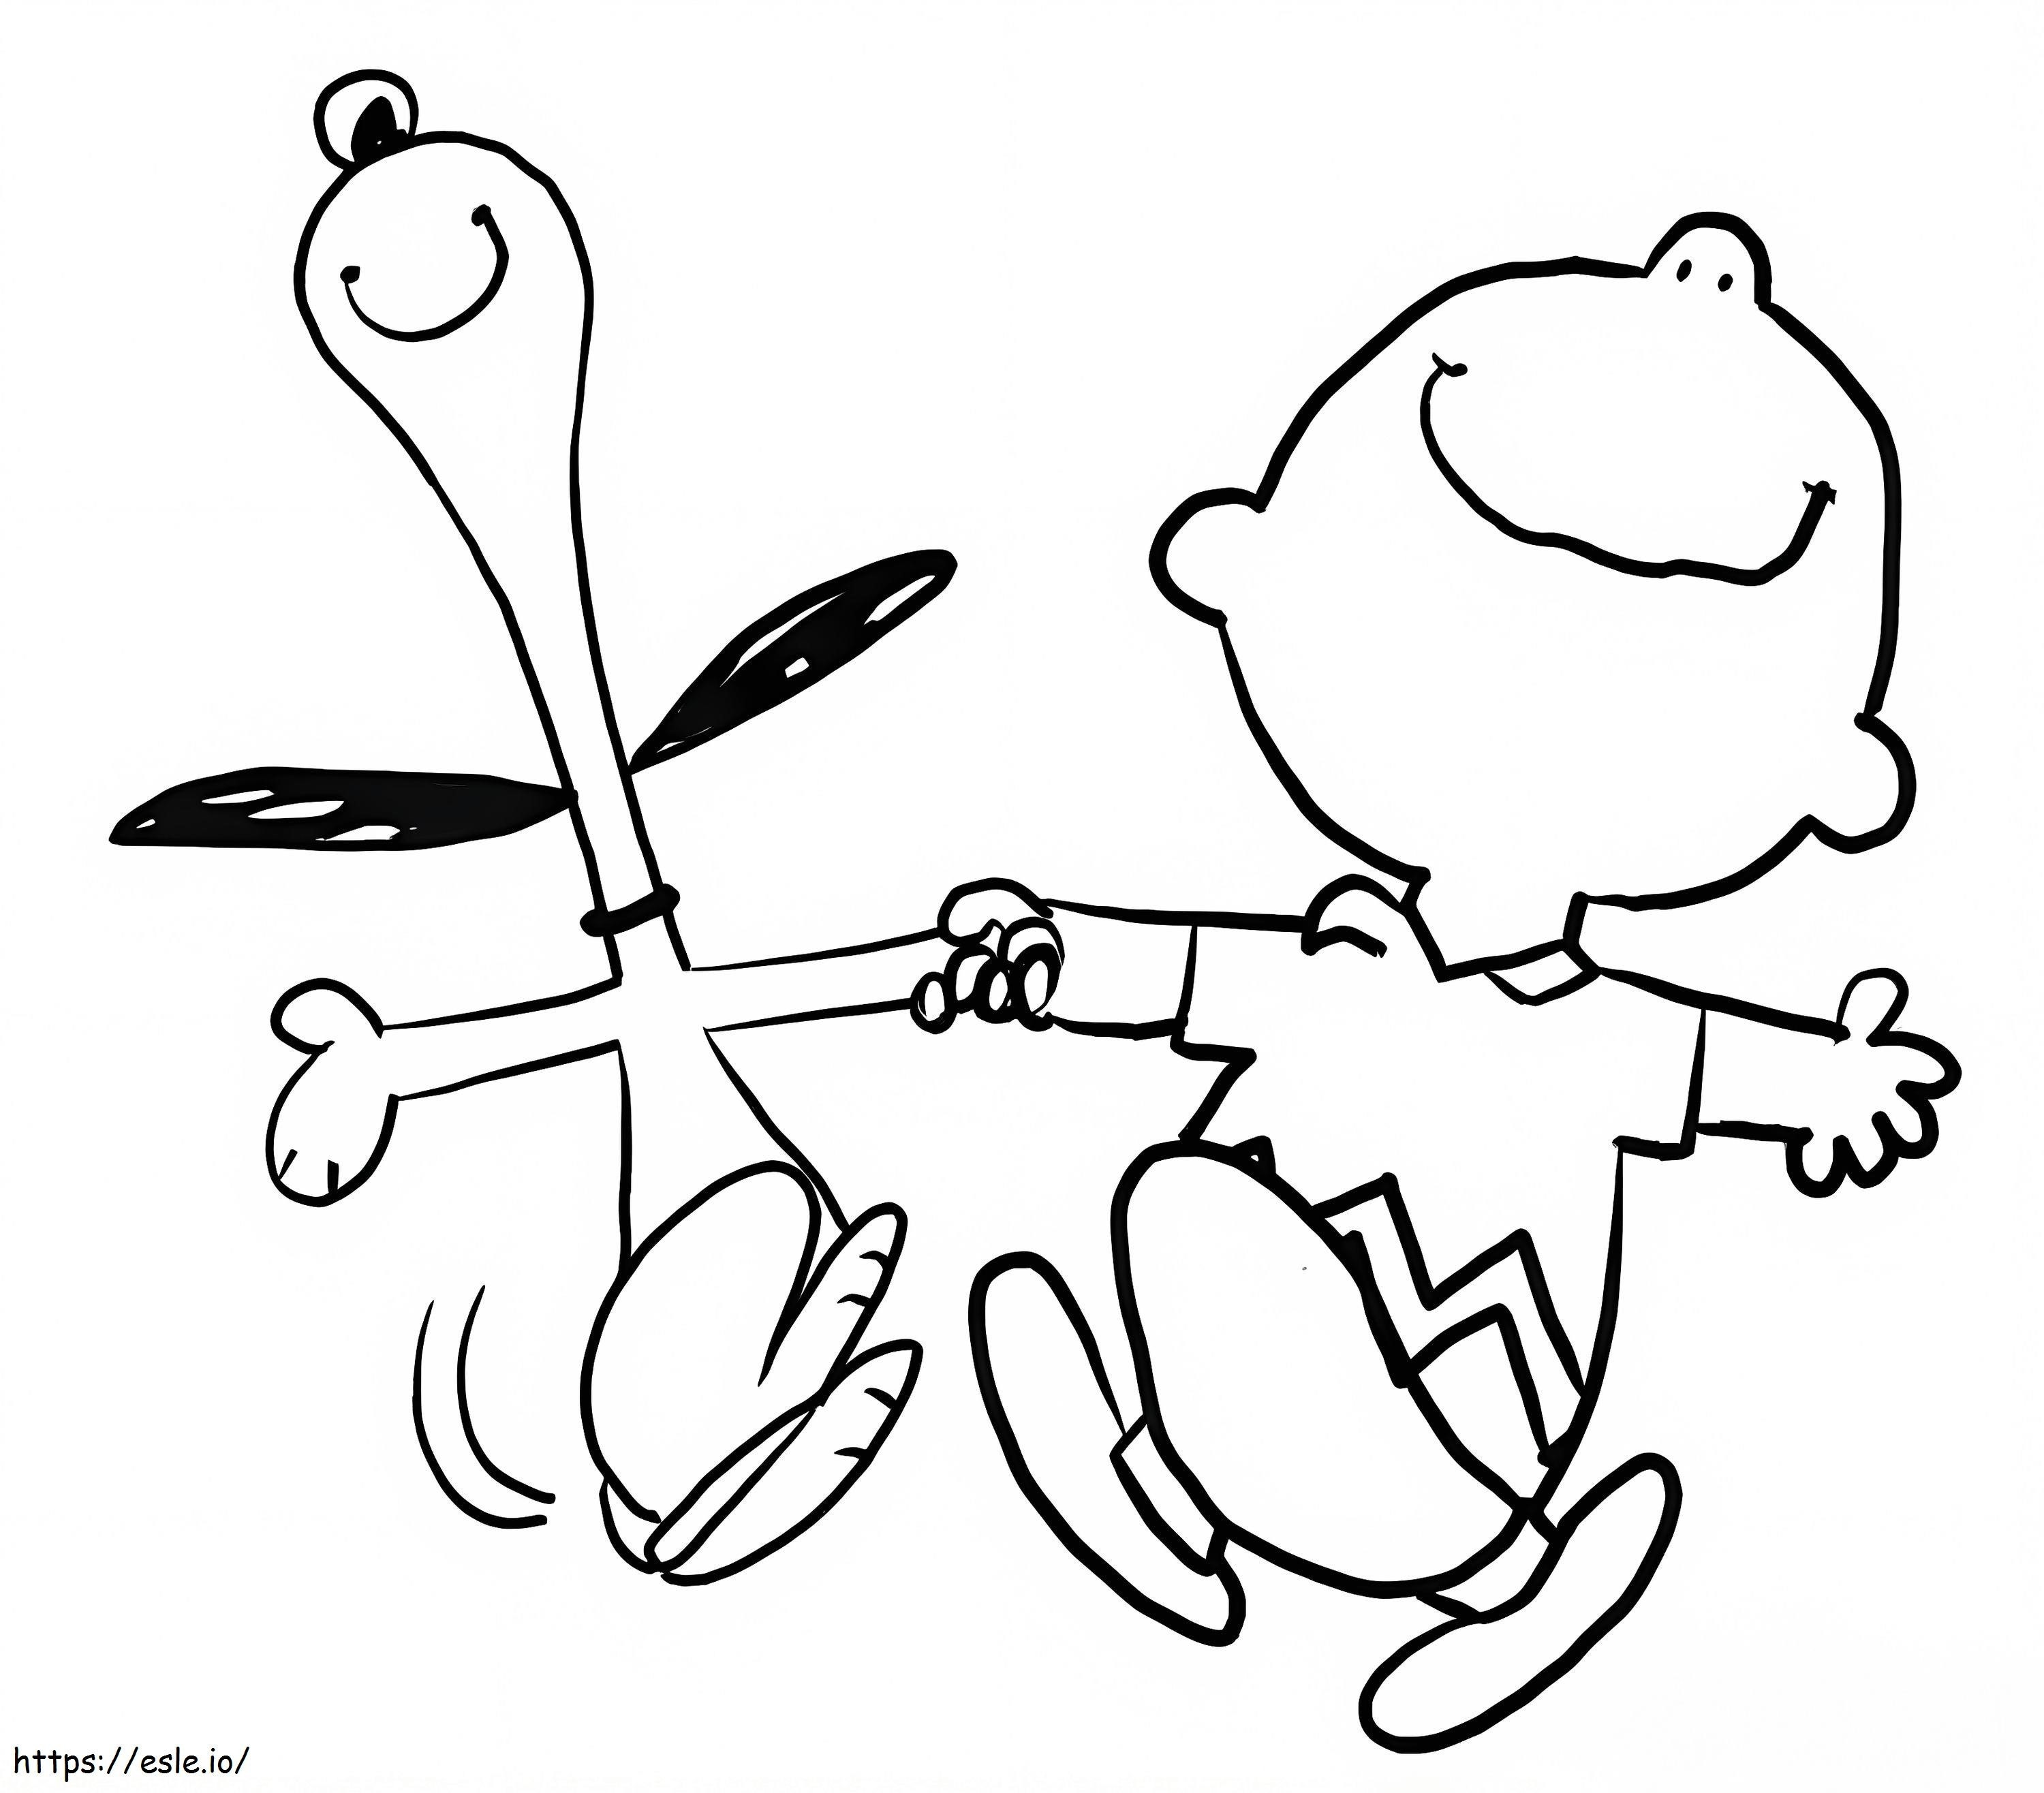 Conținut Snoopy și Charlie Brown de colorat